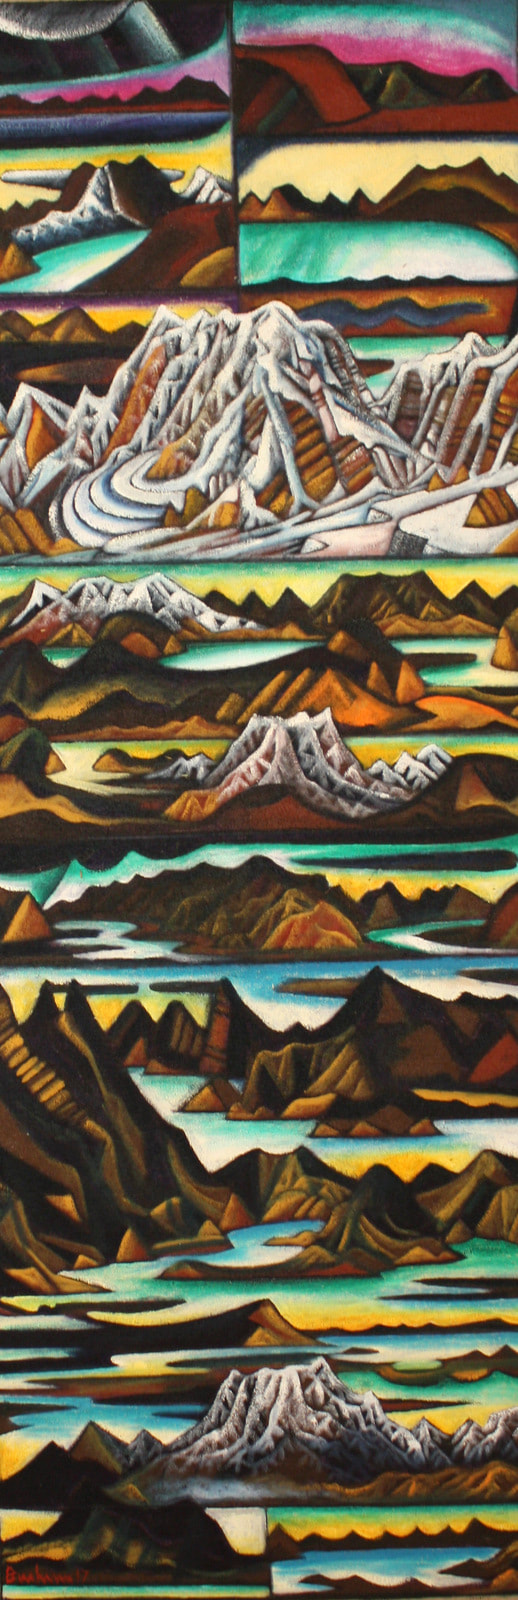 Dean Buchanan, "Mount Cook", Oil on Hessian, 2000 x 680mm, 2017